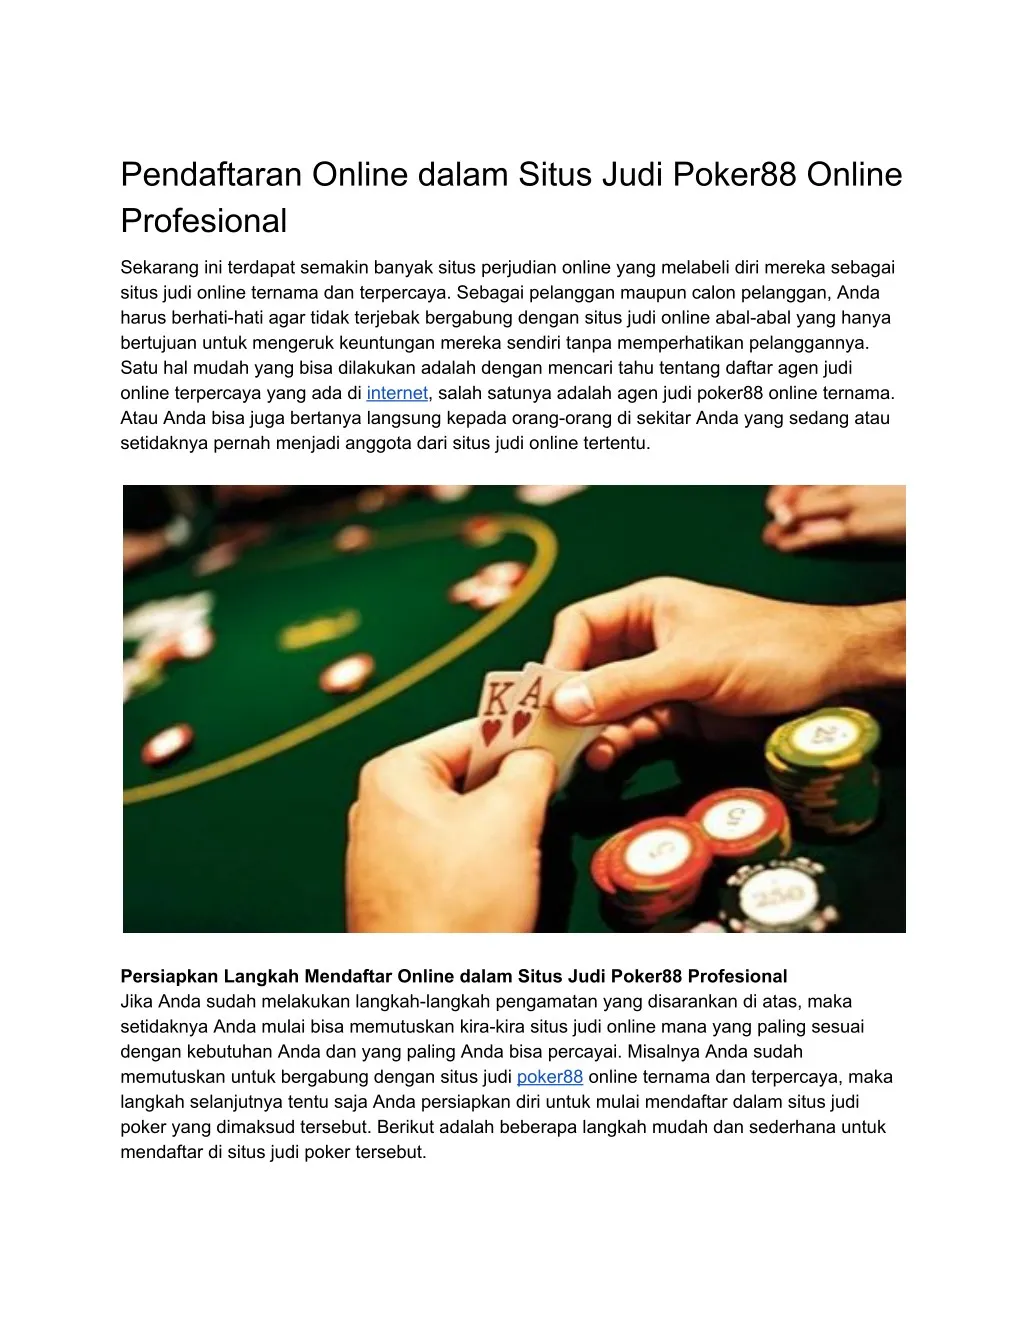 pendaftaran online dalam situs judi poker88